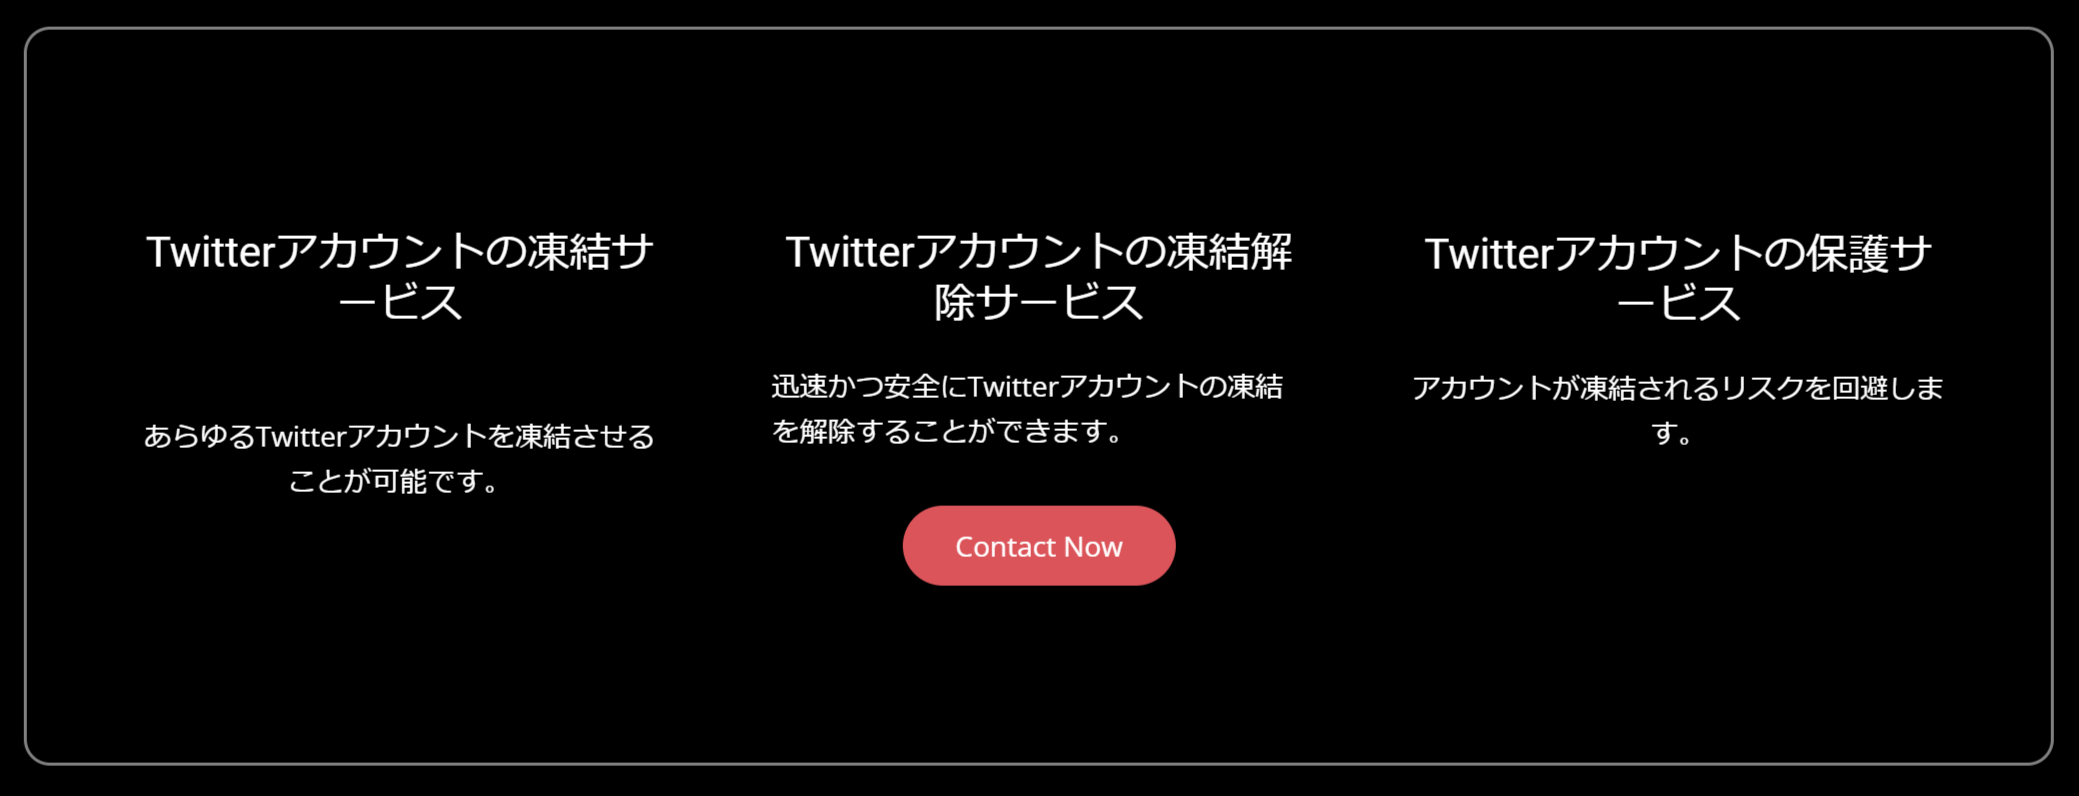 突然twitterが凍結される 背後にある凍結屋の存在とその恐ろしい手口とは Engadget 日本版